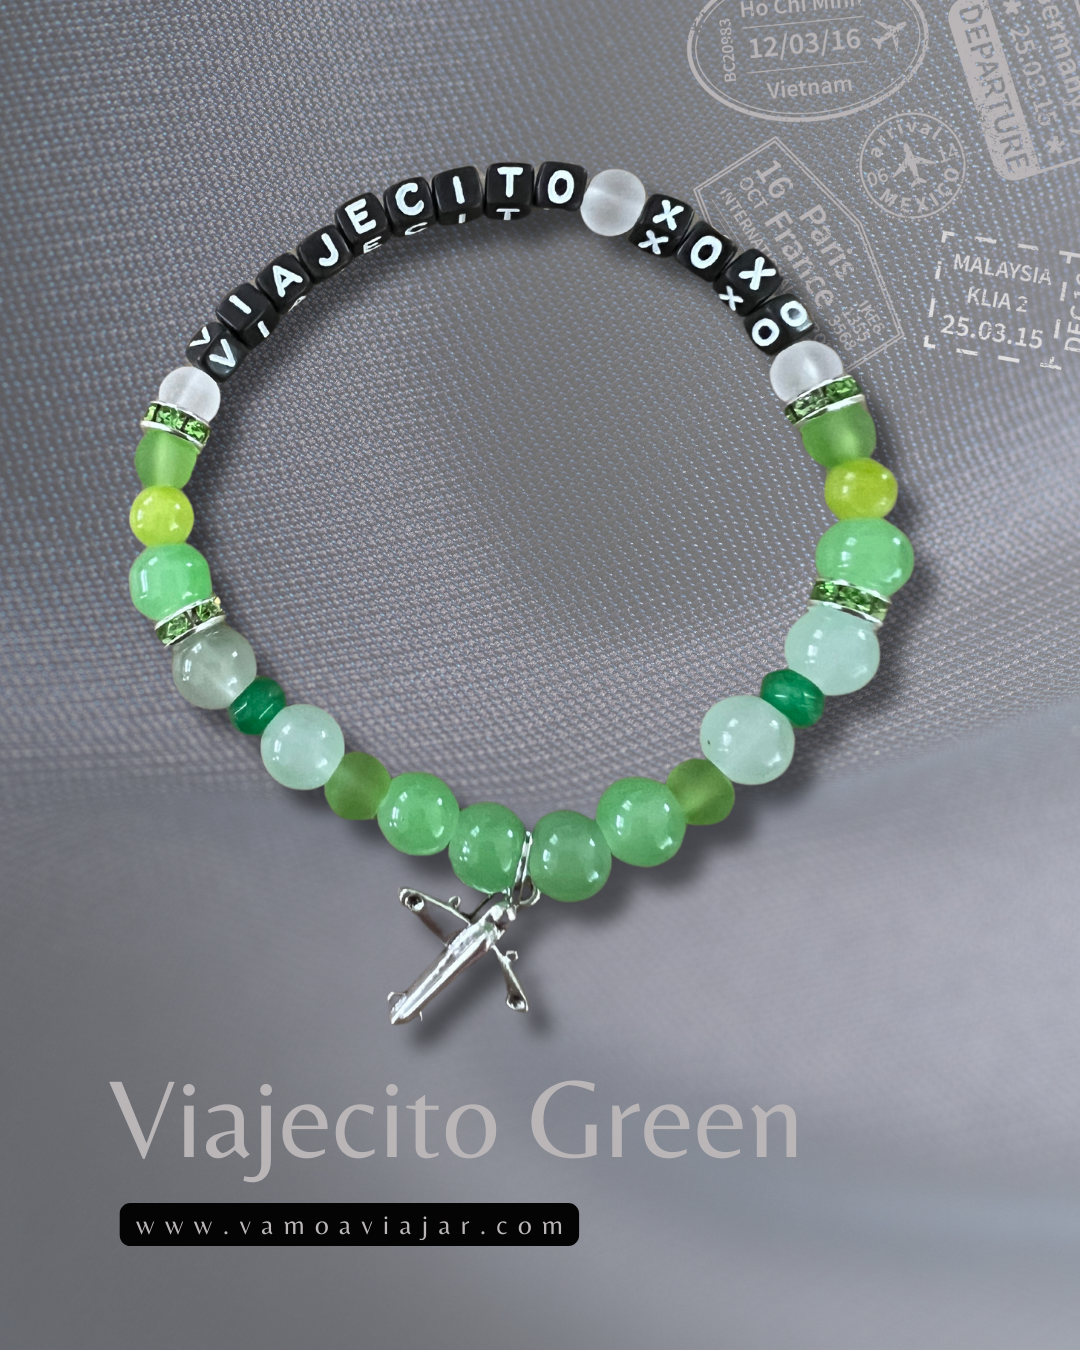 Bracelet: Viajecito Green